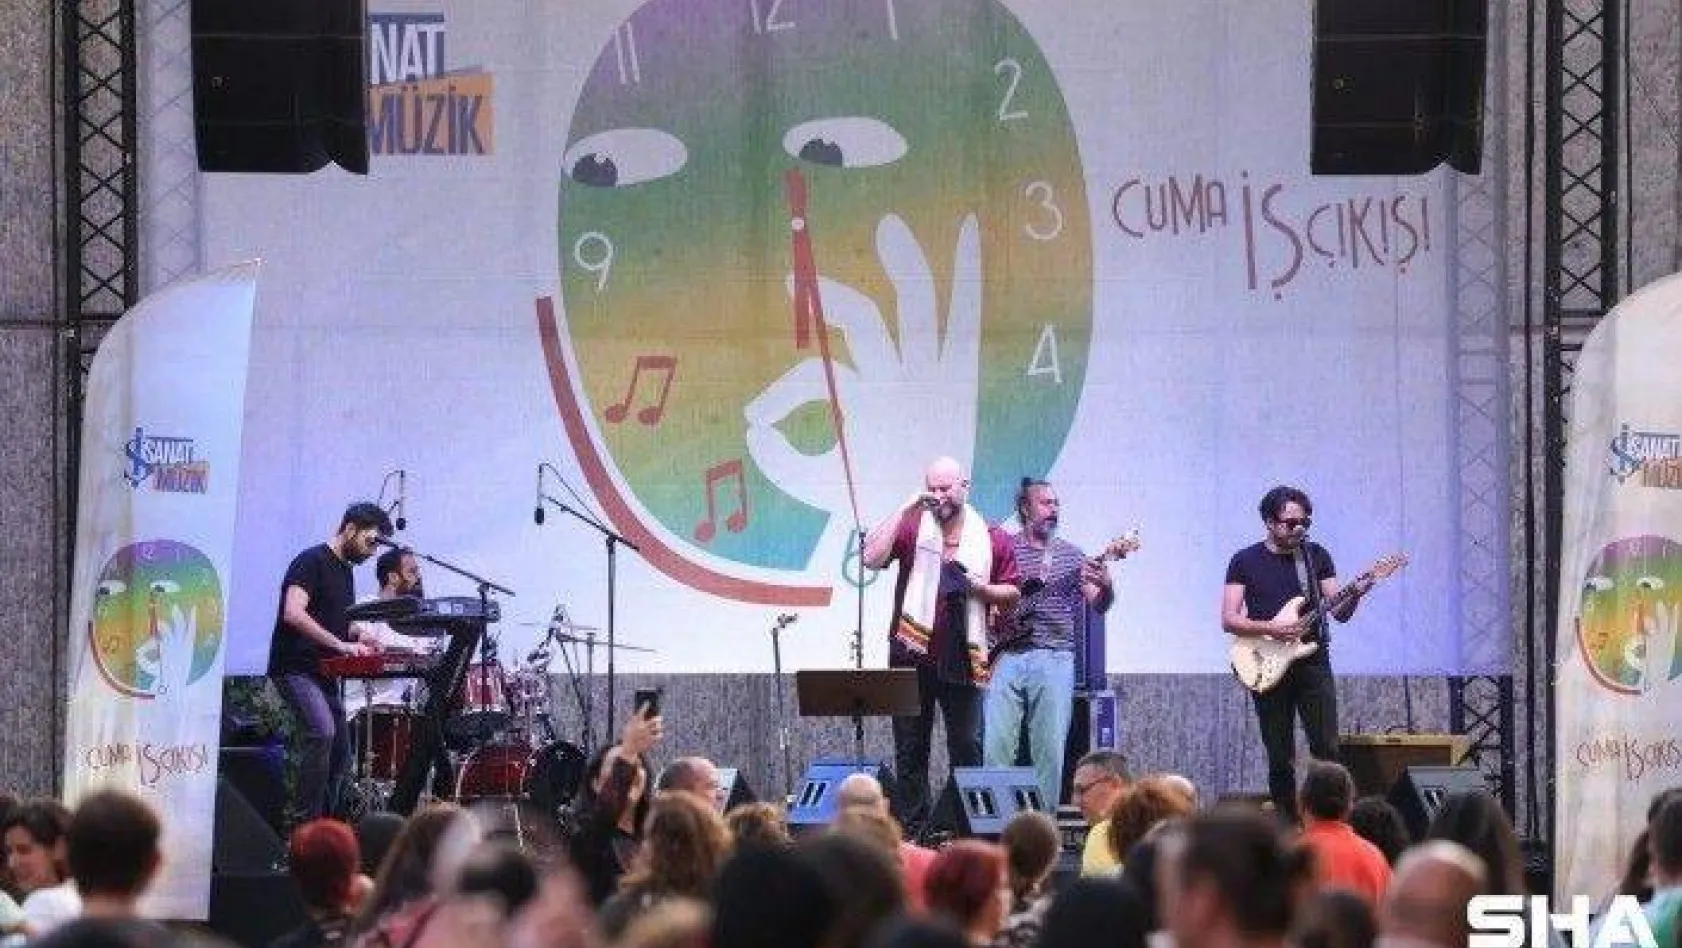 Sattas, 'Cuma İş Çıkışı' açık hava konserinde sahne aldı